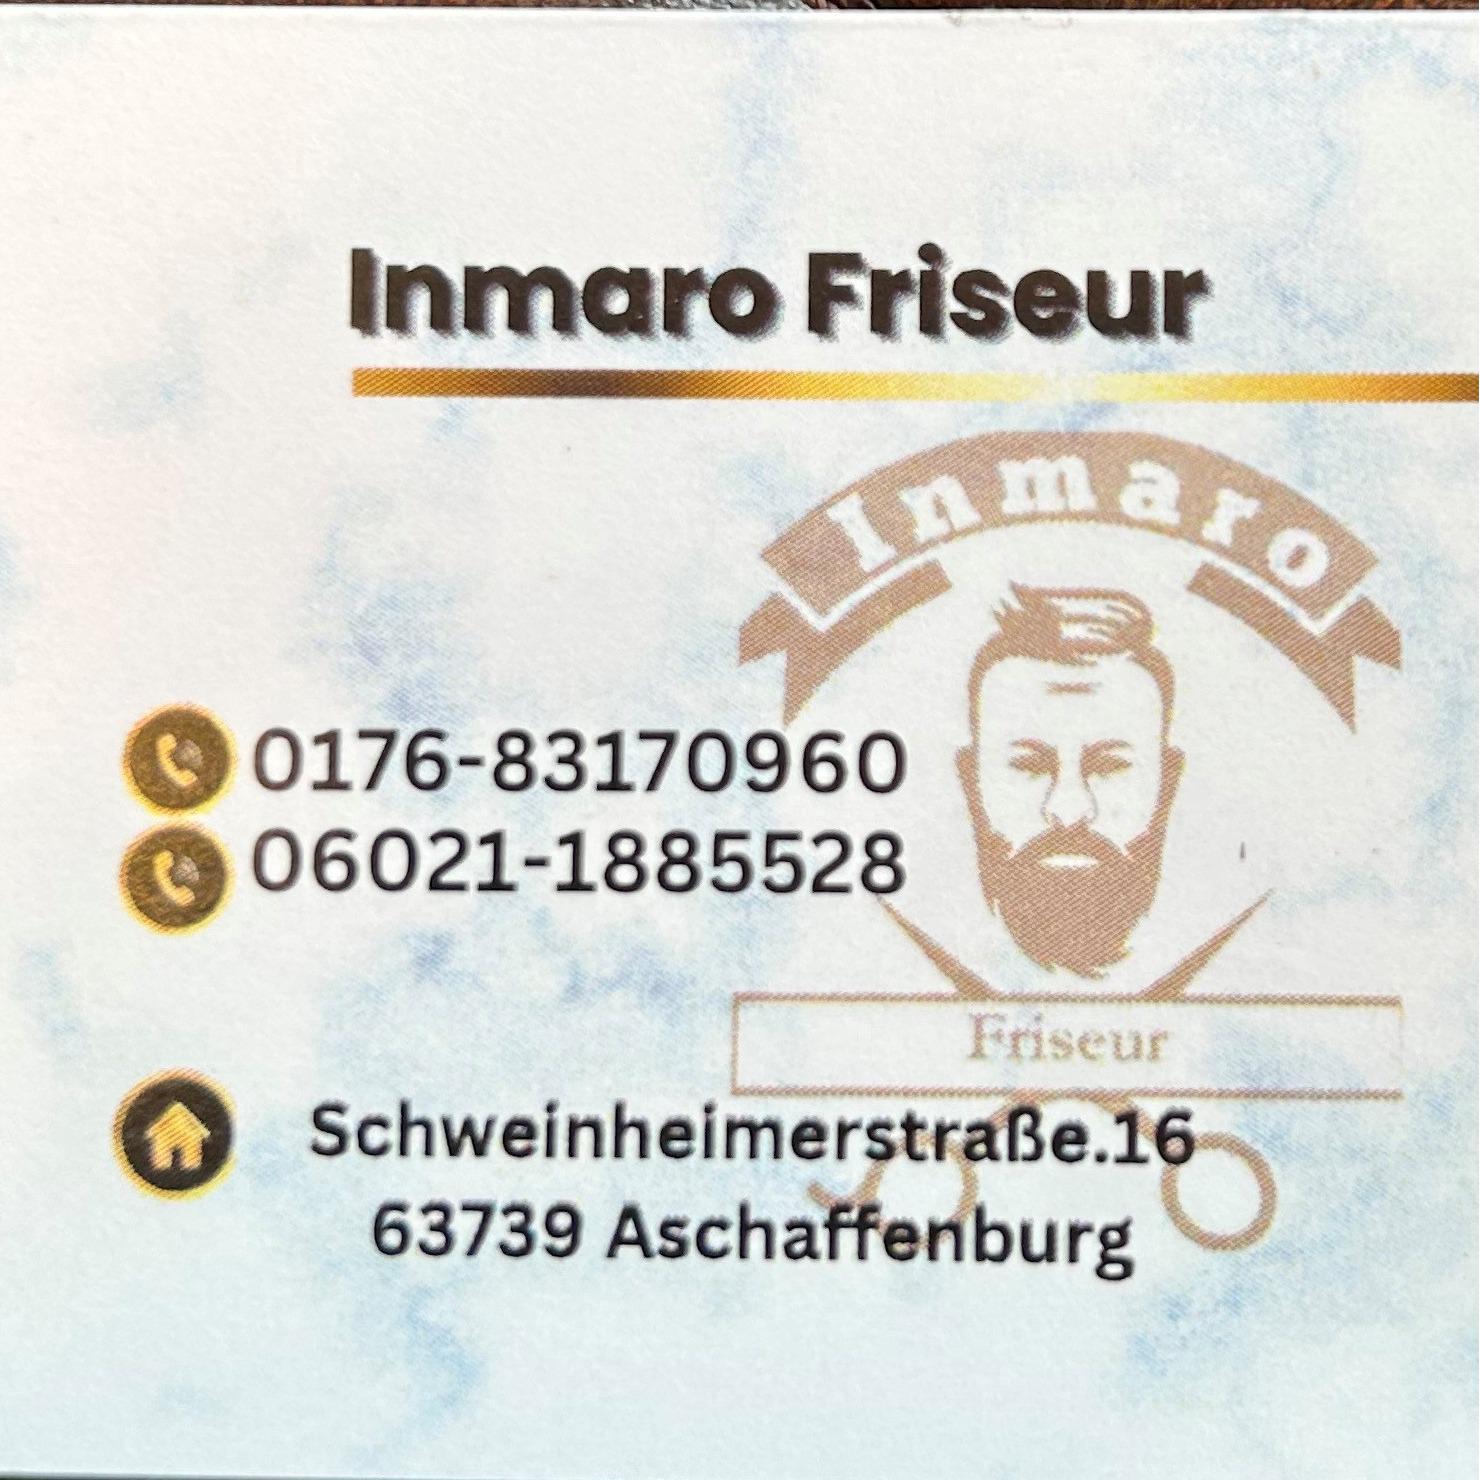 Inmaro Friseur in Aschaffenburg - Logo